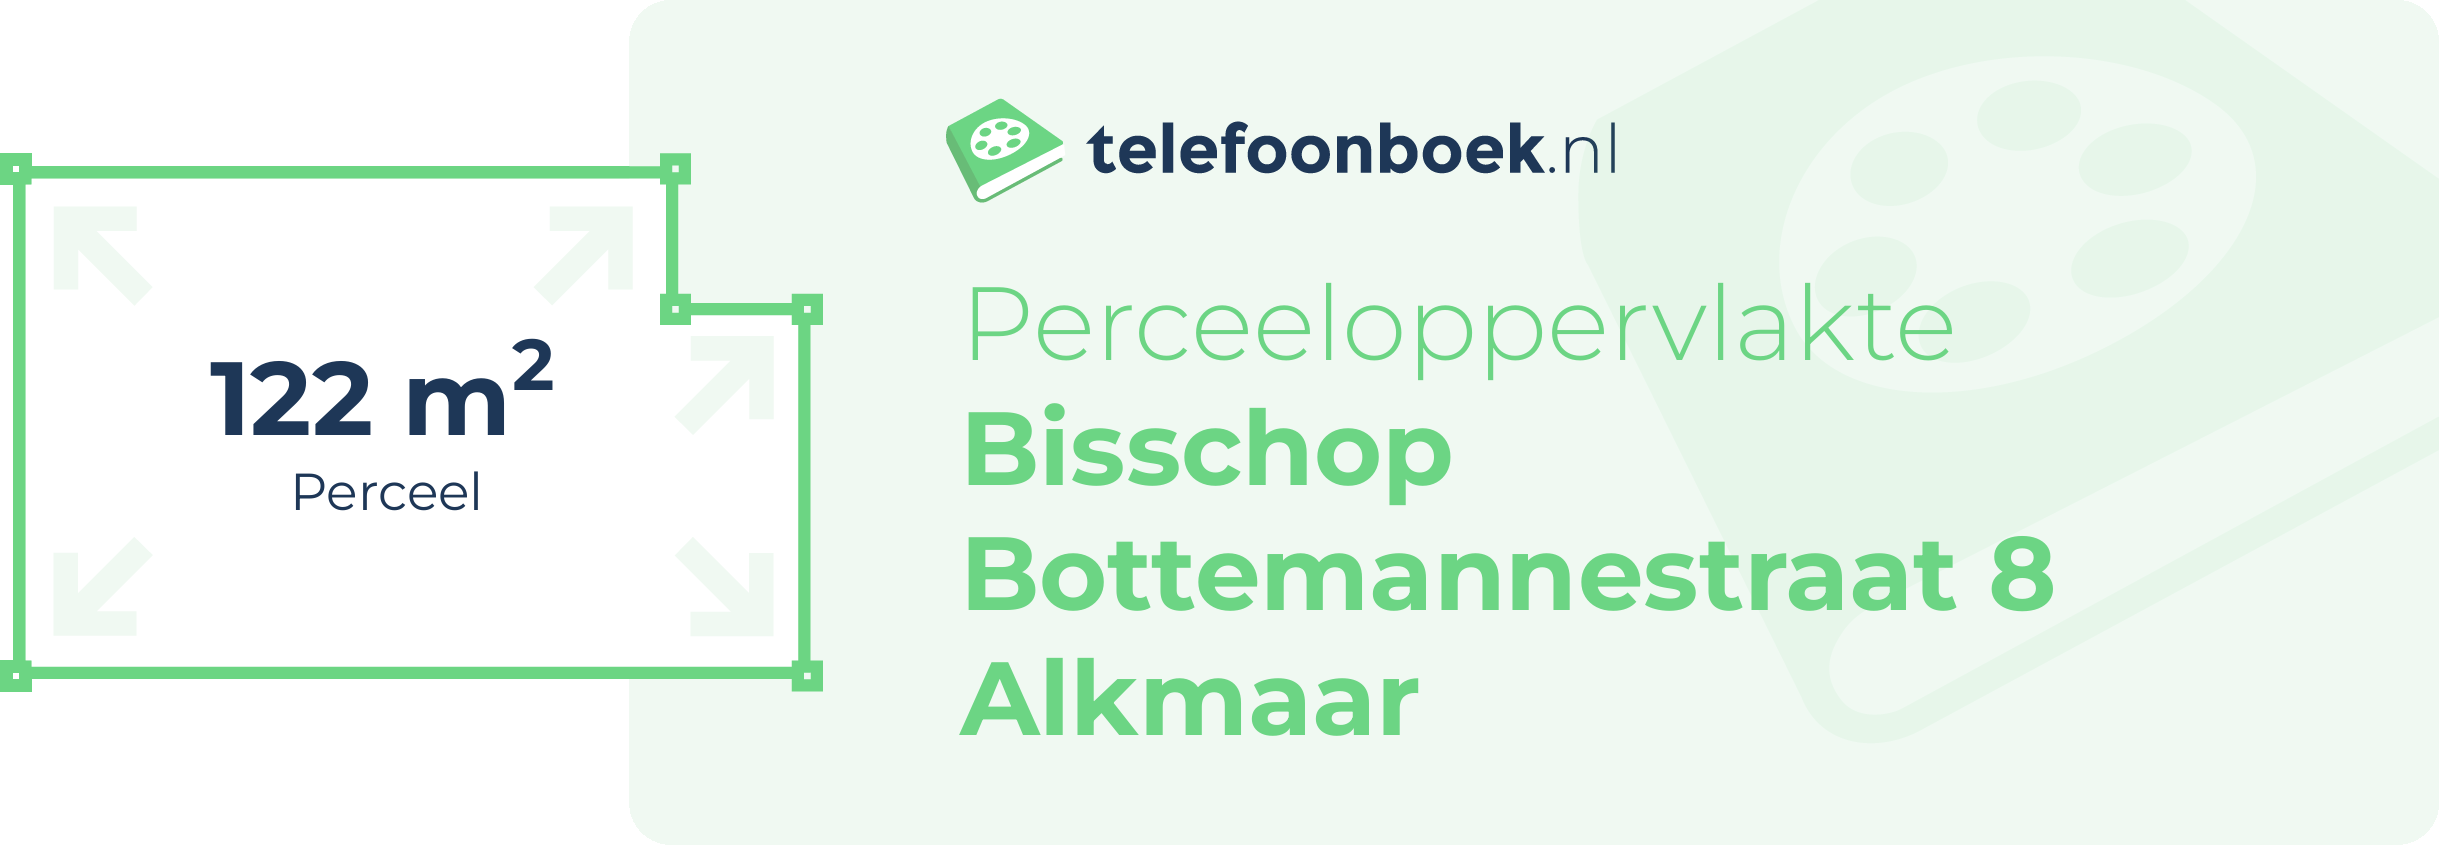 Perceeloppervlakte Bisschop Bottemannestraat 8 Alkmaar